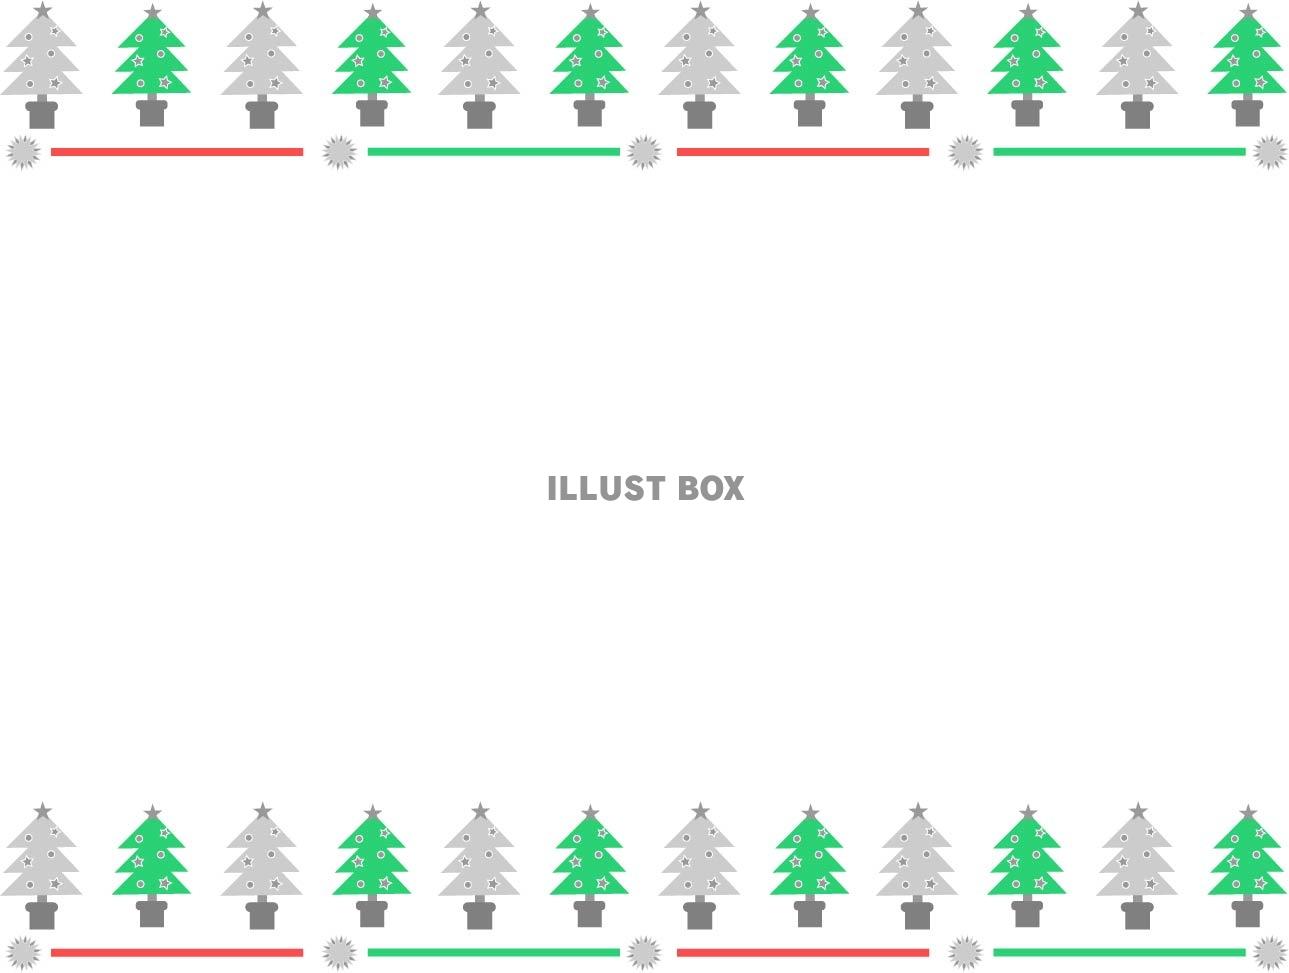 クリスマスツリーのオシャレなフレーム・枠素材